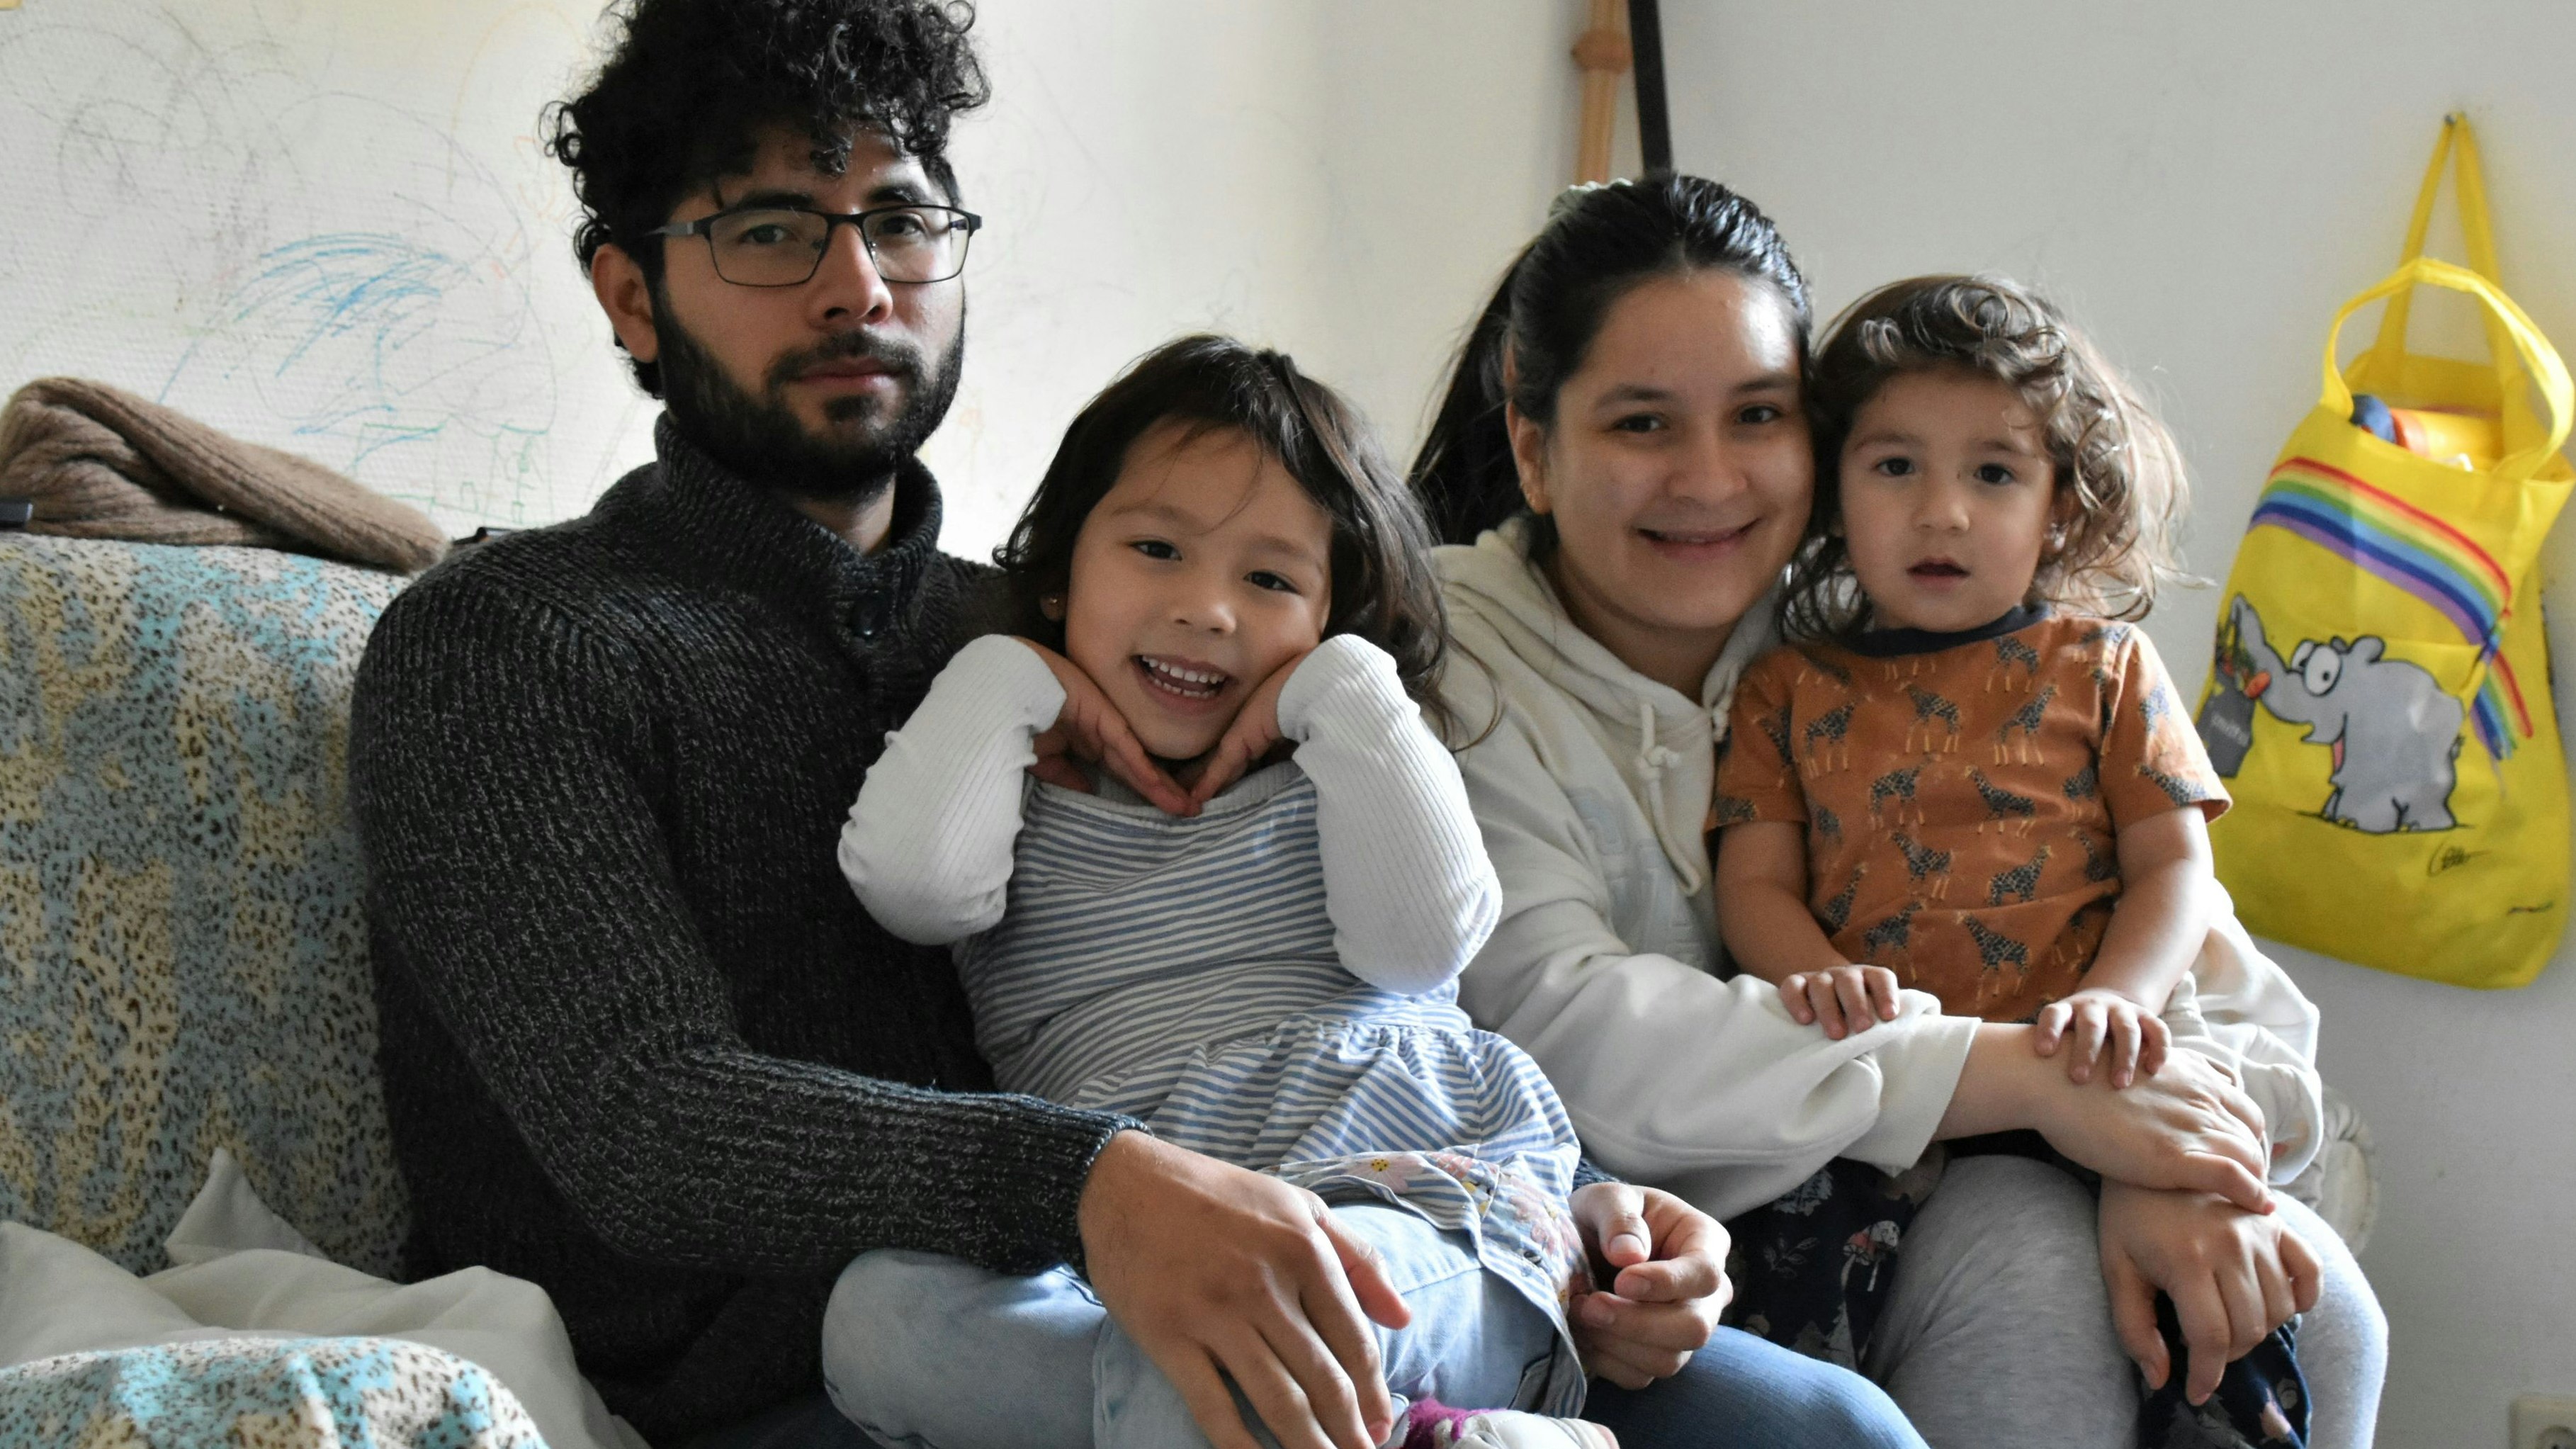 Kämpfen gegen die Abschiebung: Jose Pérez, seine Frau Angie und ihre Kinder leben in einem Flüchtlingsheim in Bösel. Foto: Hahn